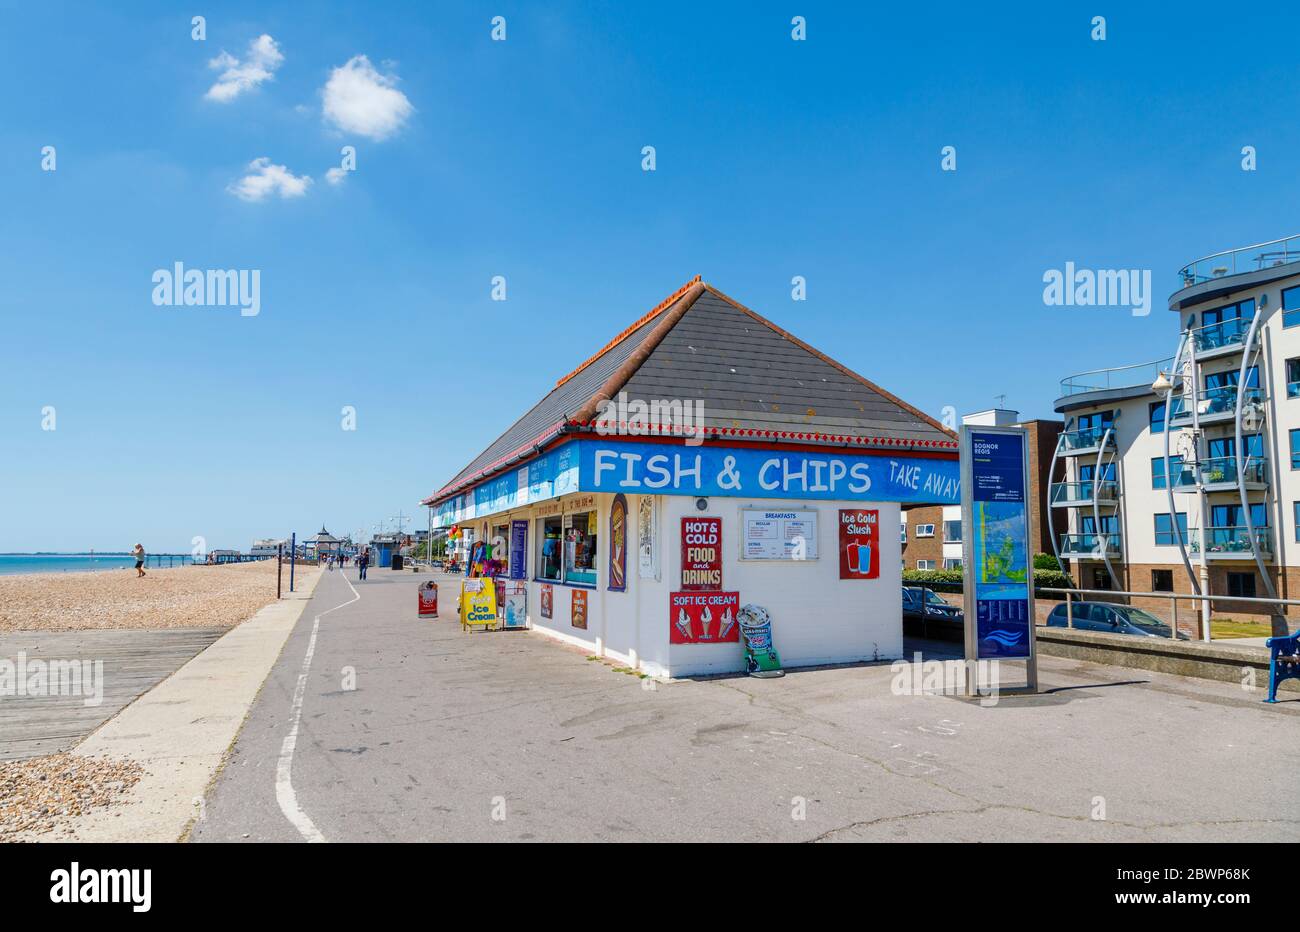 L'Esplanade Beach, ses boutiques et ses snack-bars, sur le front de mer, se trouvent à Bognor Regis, une ville balnéaire de West Sussex, sur la côte sud de l'Angleterre, par une journée ensoleillée Banque D'Images